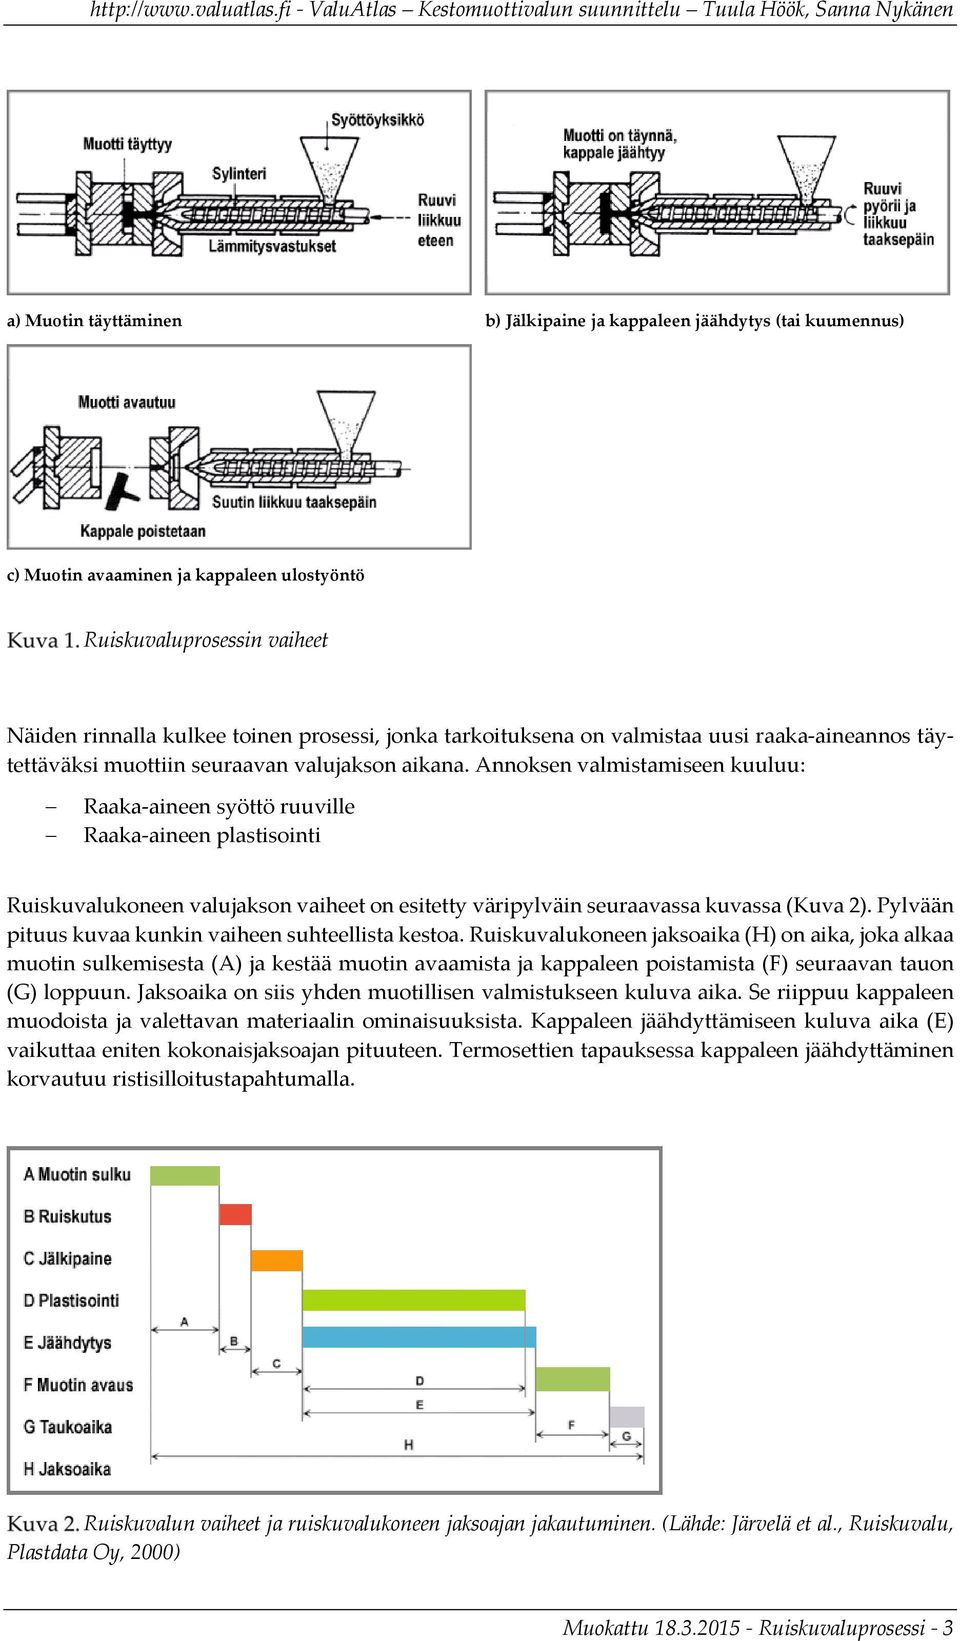 Annoksen valmistamiseen kuuluu: Raaka aineen syöttö ruuville Raaka aineen plastisointi Ruiskuvalukoneen valujakson vaiheet on esitetty väripylväin seuraavassa kuvassa (Kuva 2).